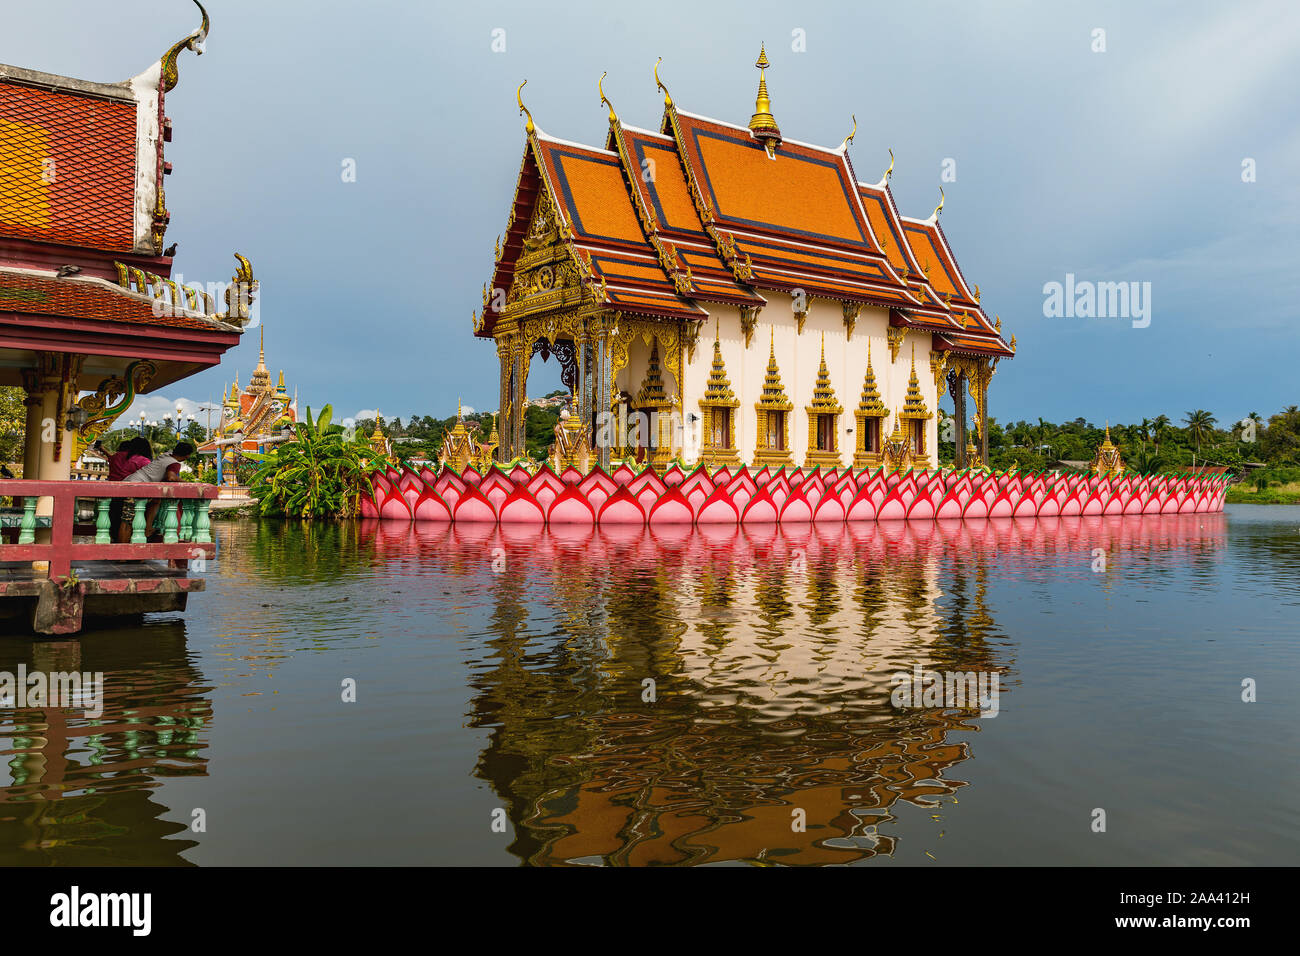 Wat Plai Laem Budhist temple on Koh Samui. Thailand Stock Photo